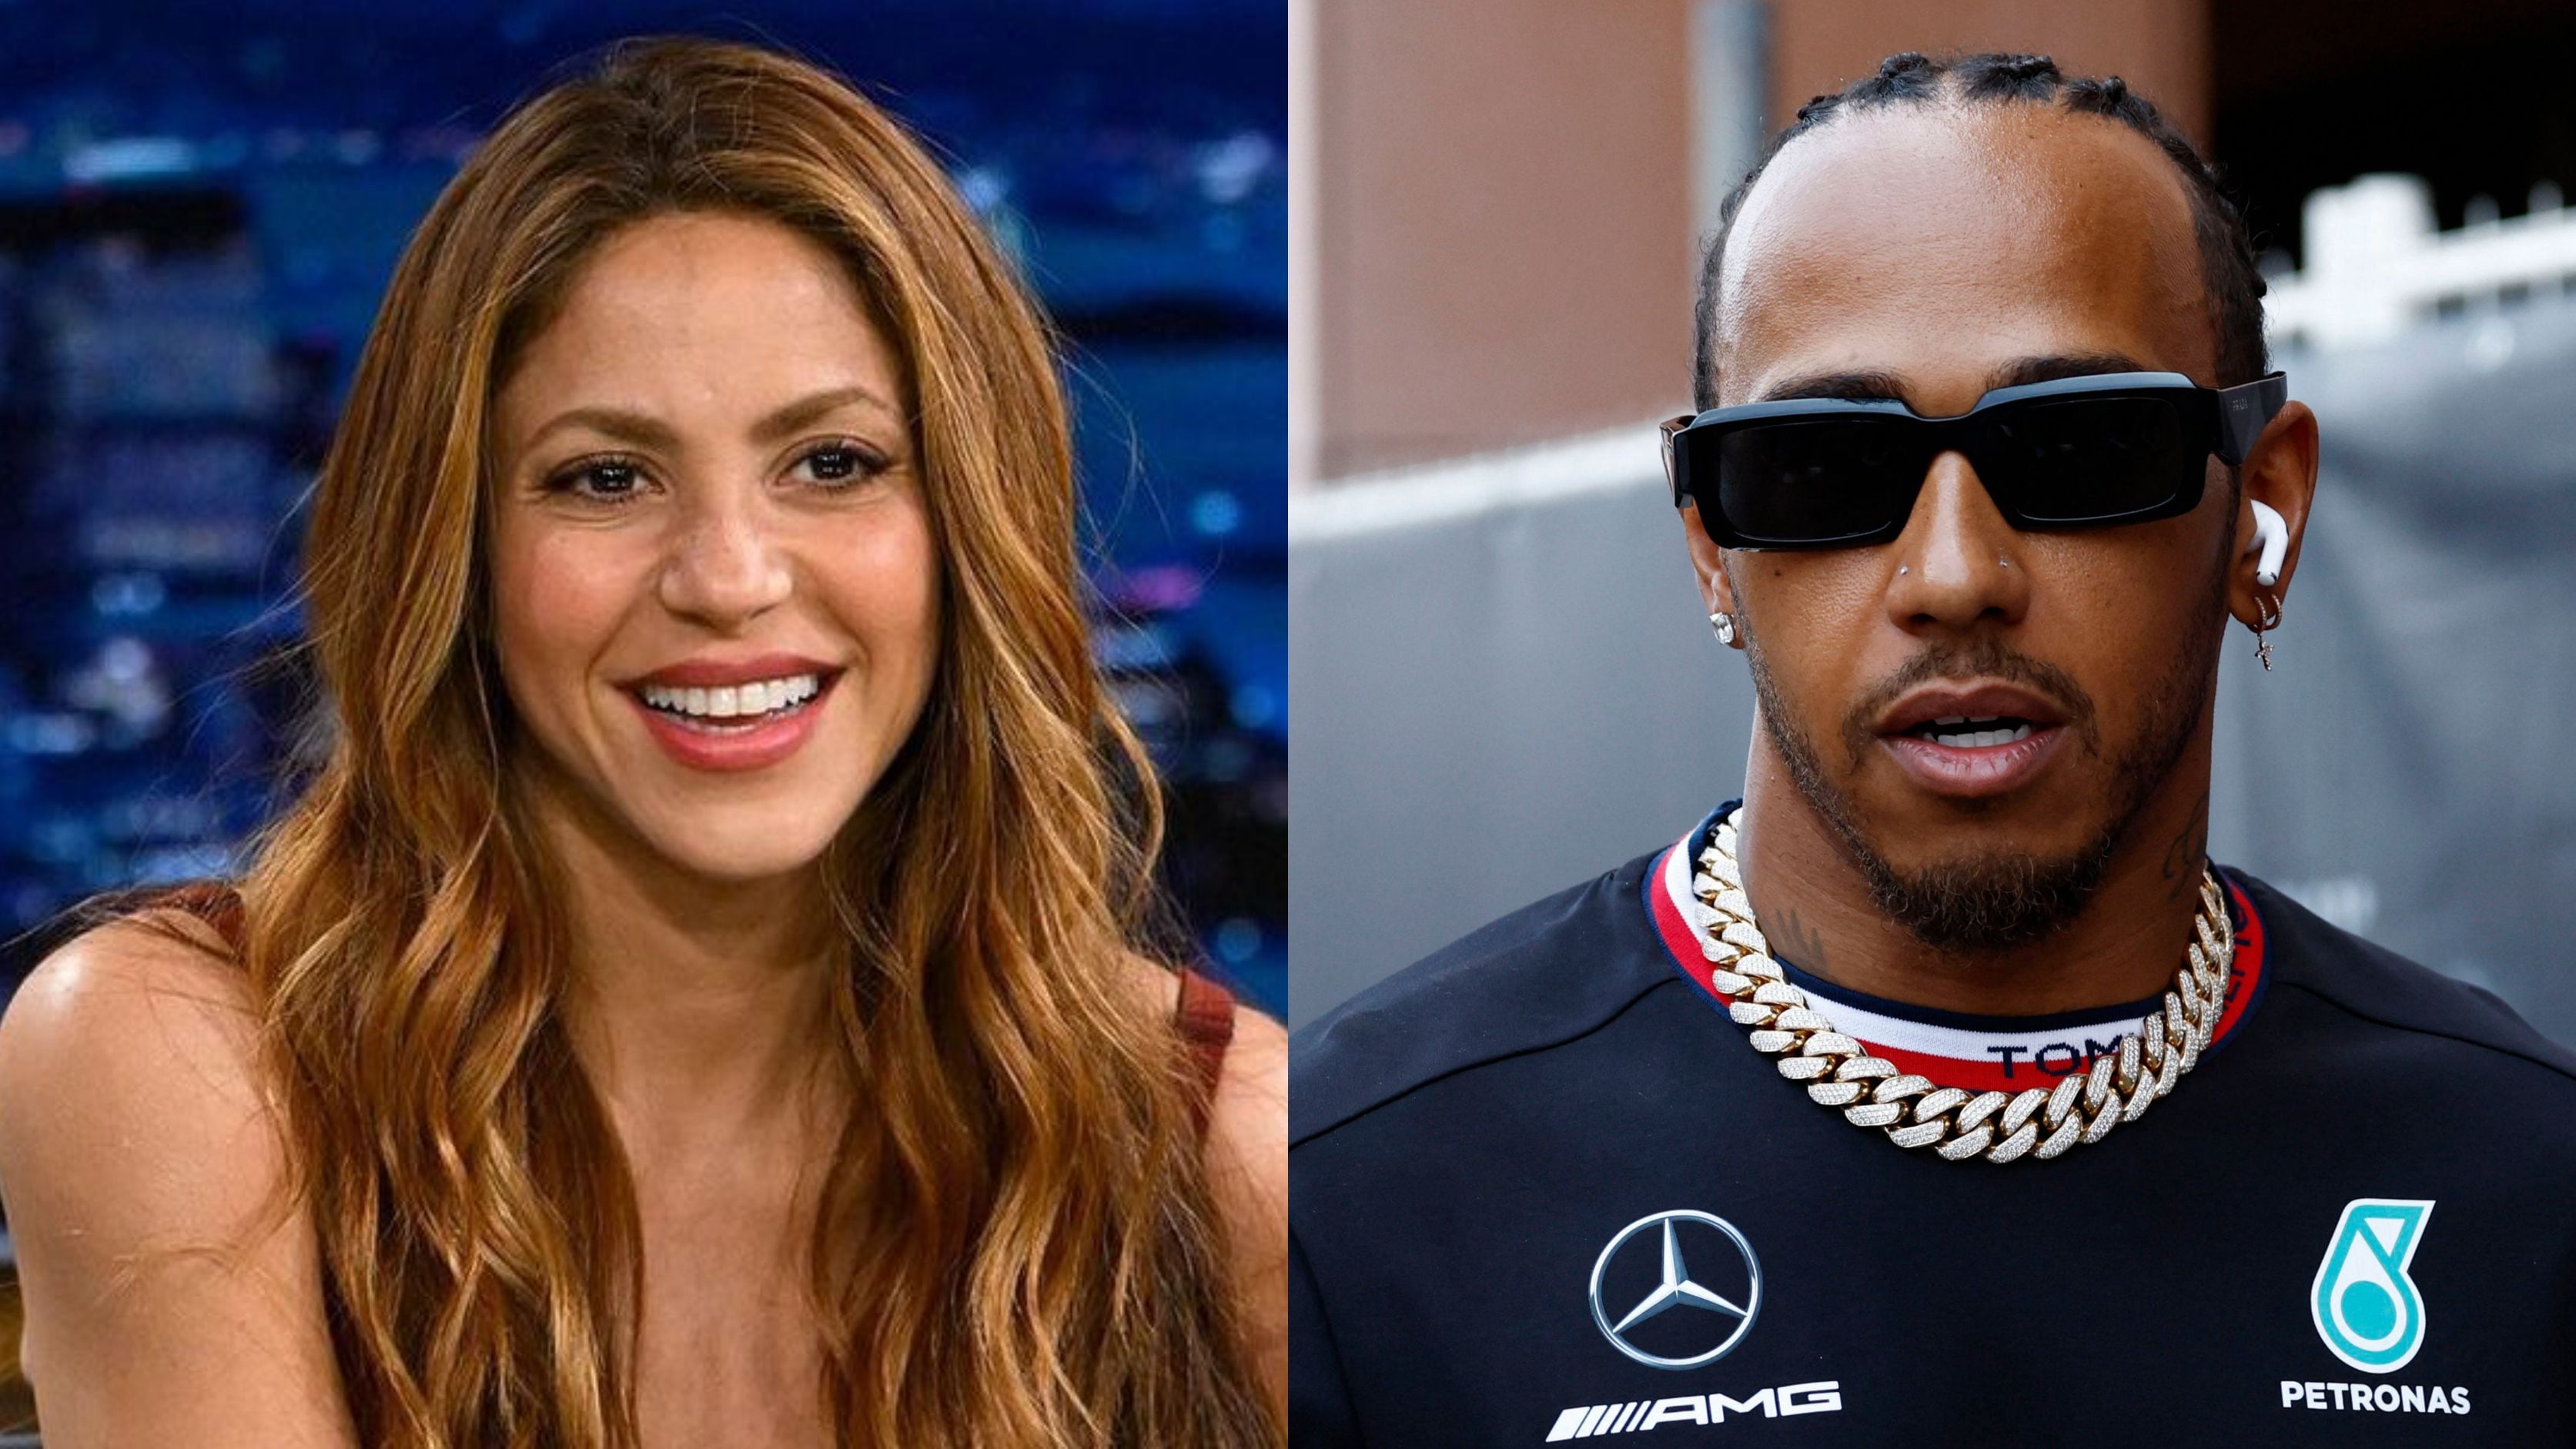 La drástica decisión que tomó Lewis Hamilton con Shakira: “Él se siente molesto”